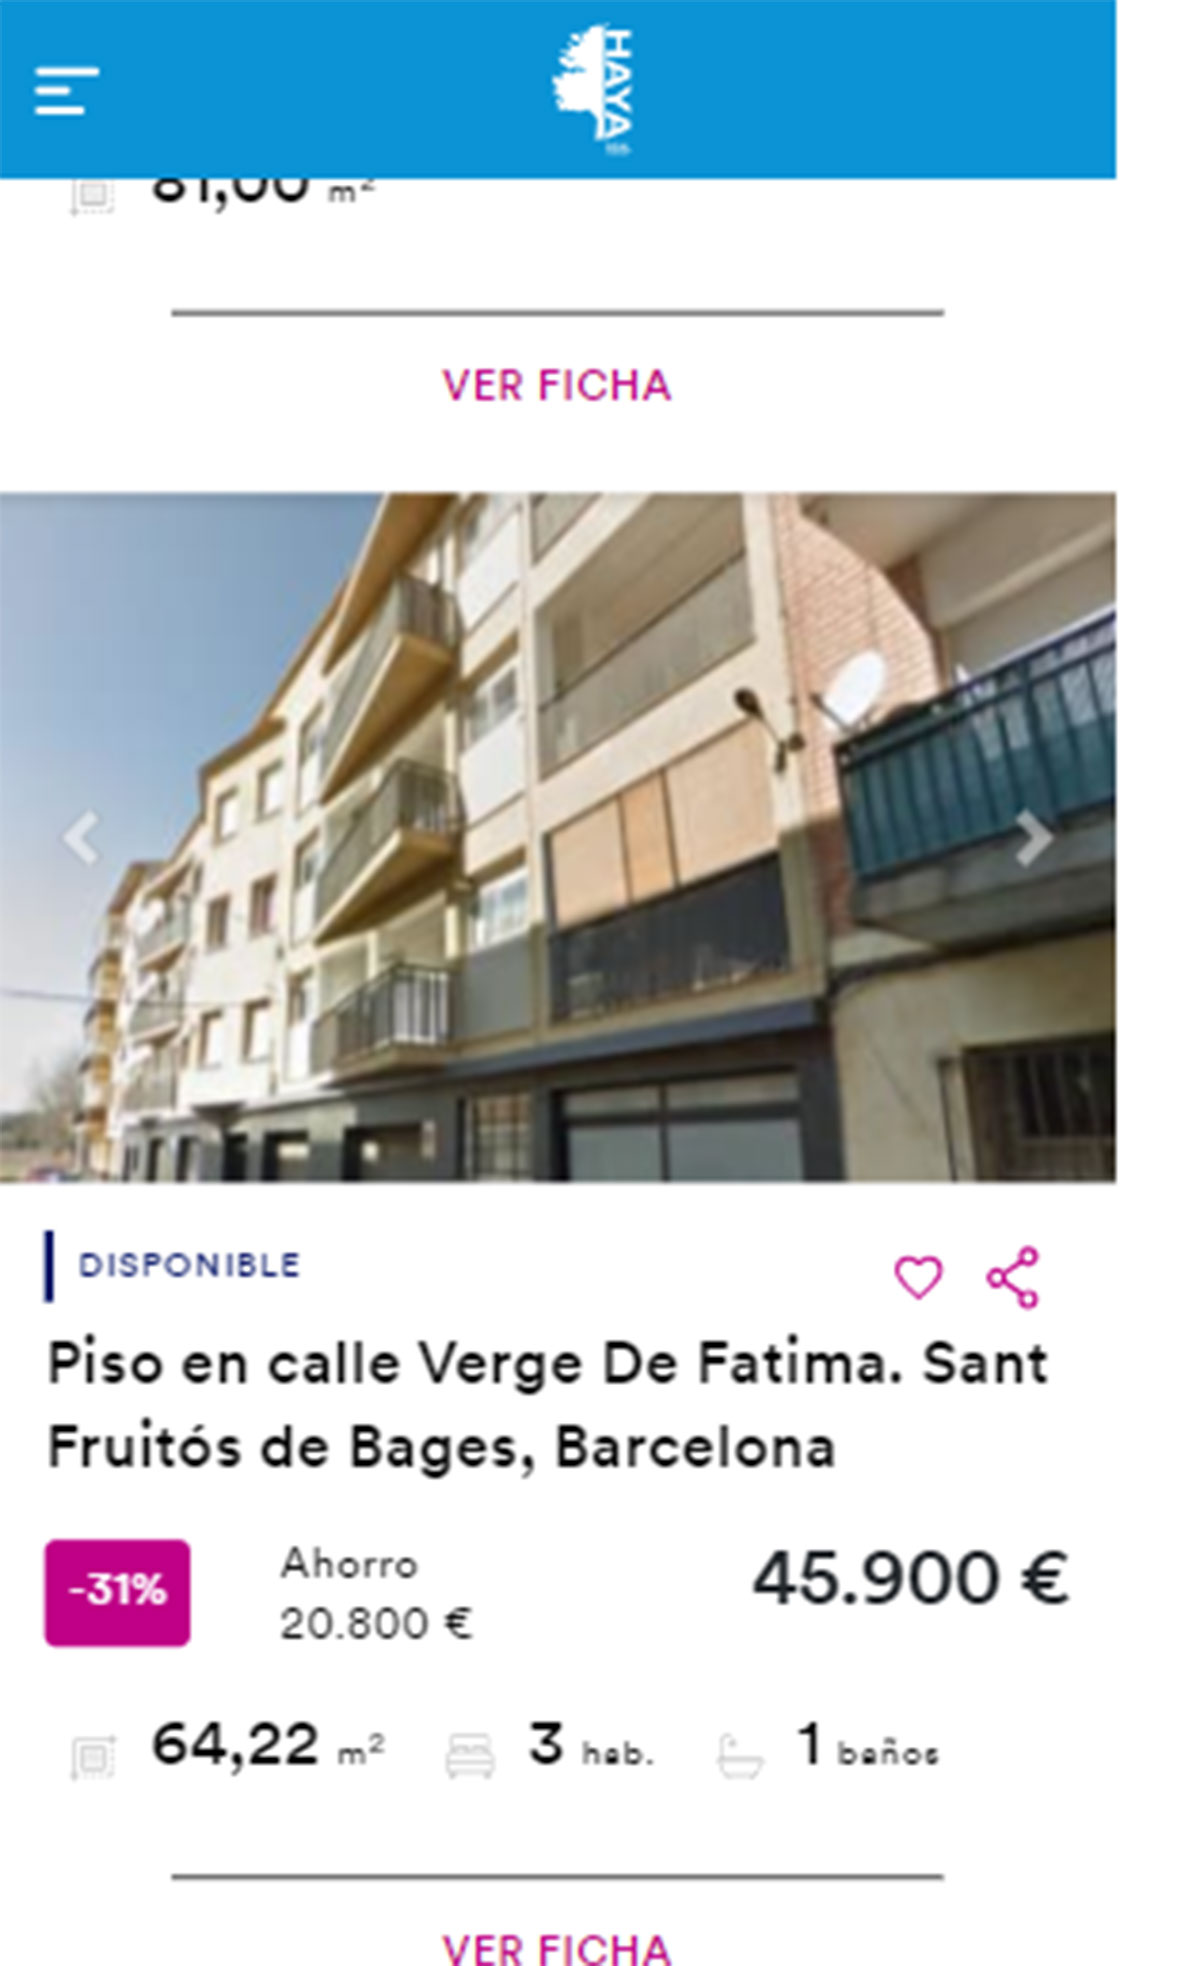 Piso en Barcelona por 45.900 euros